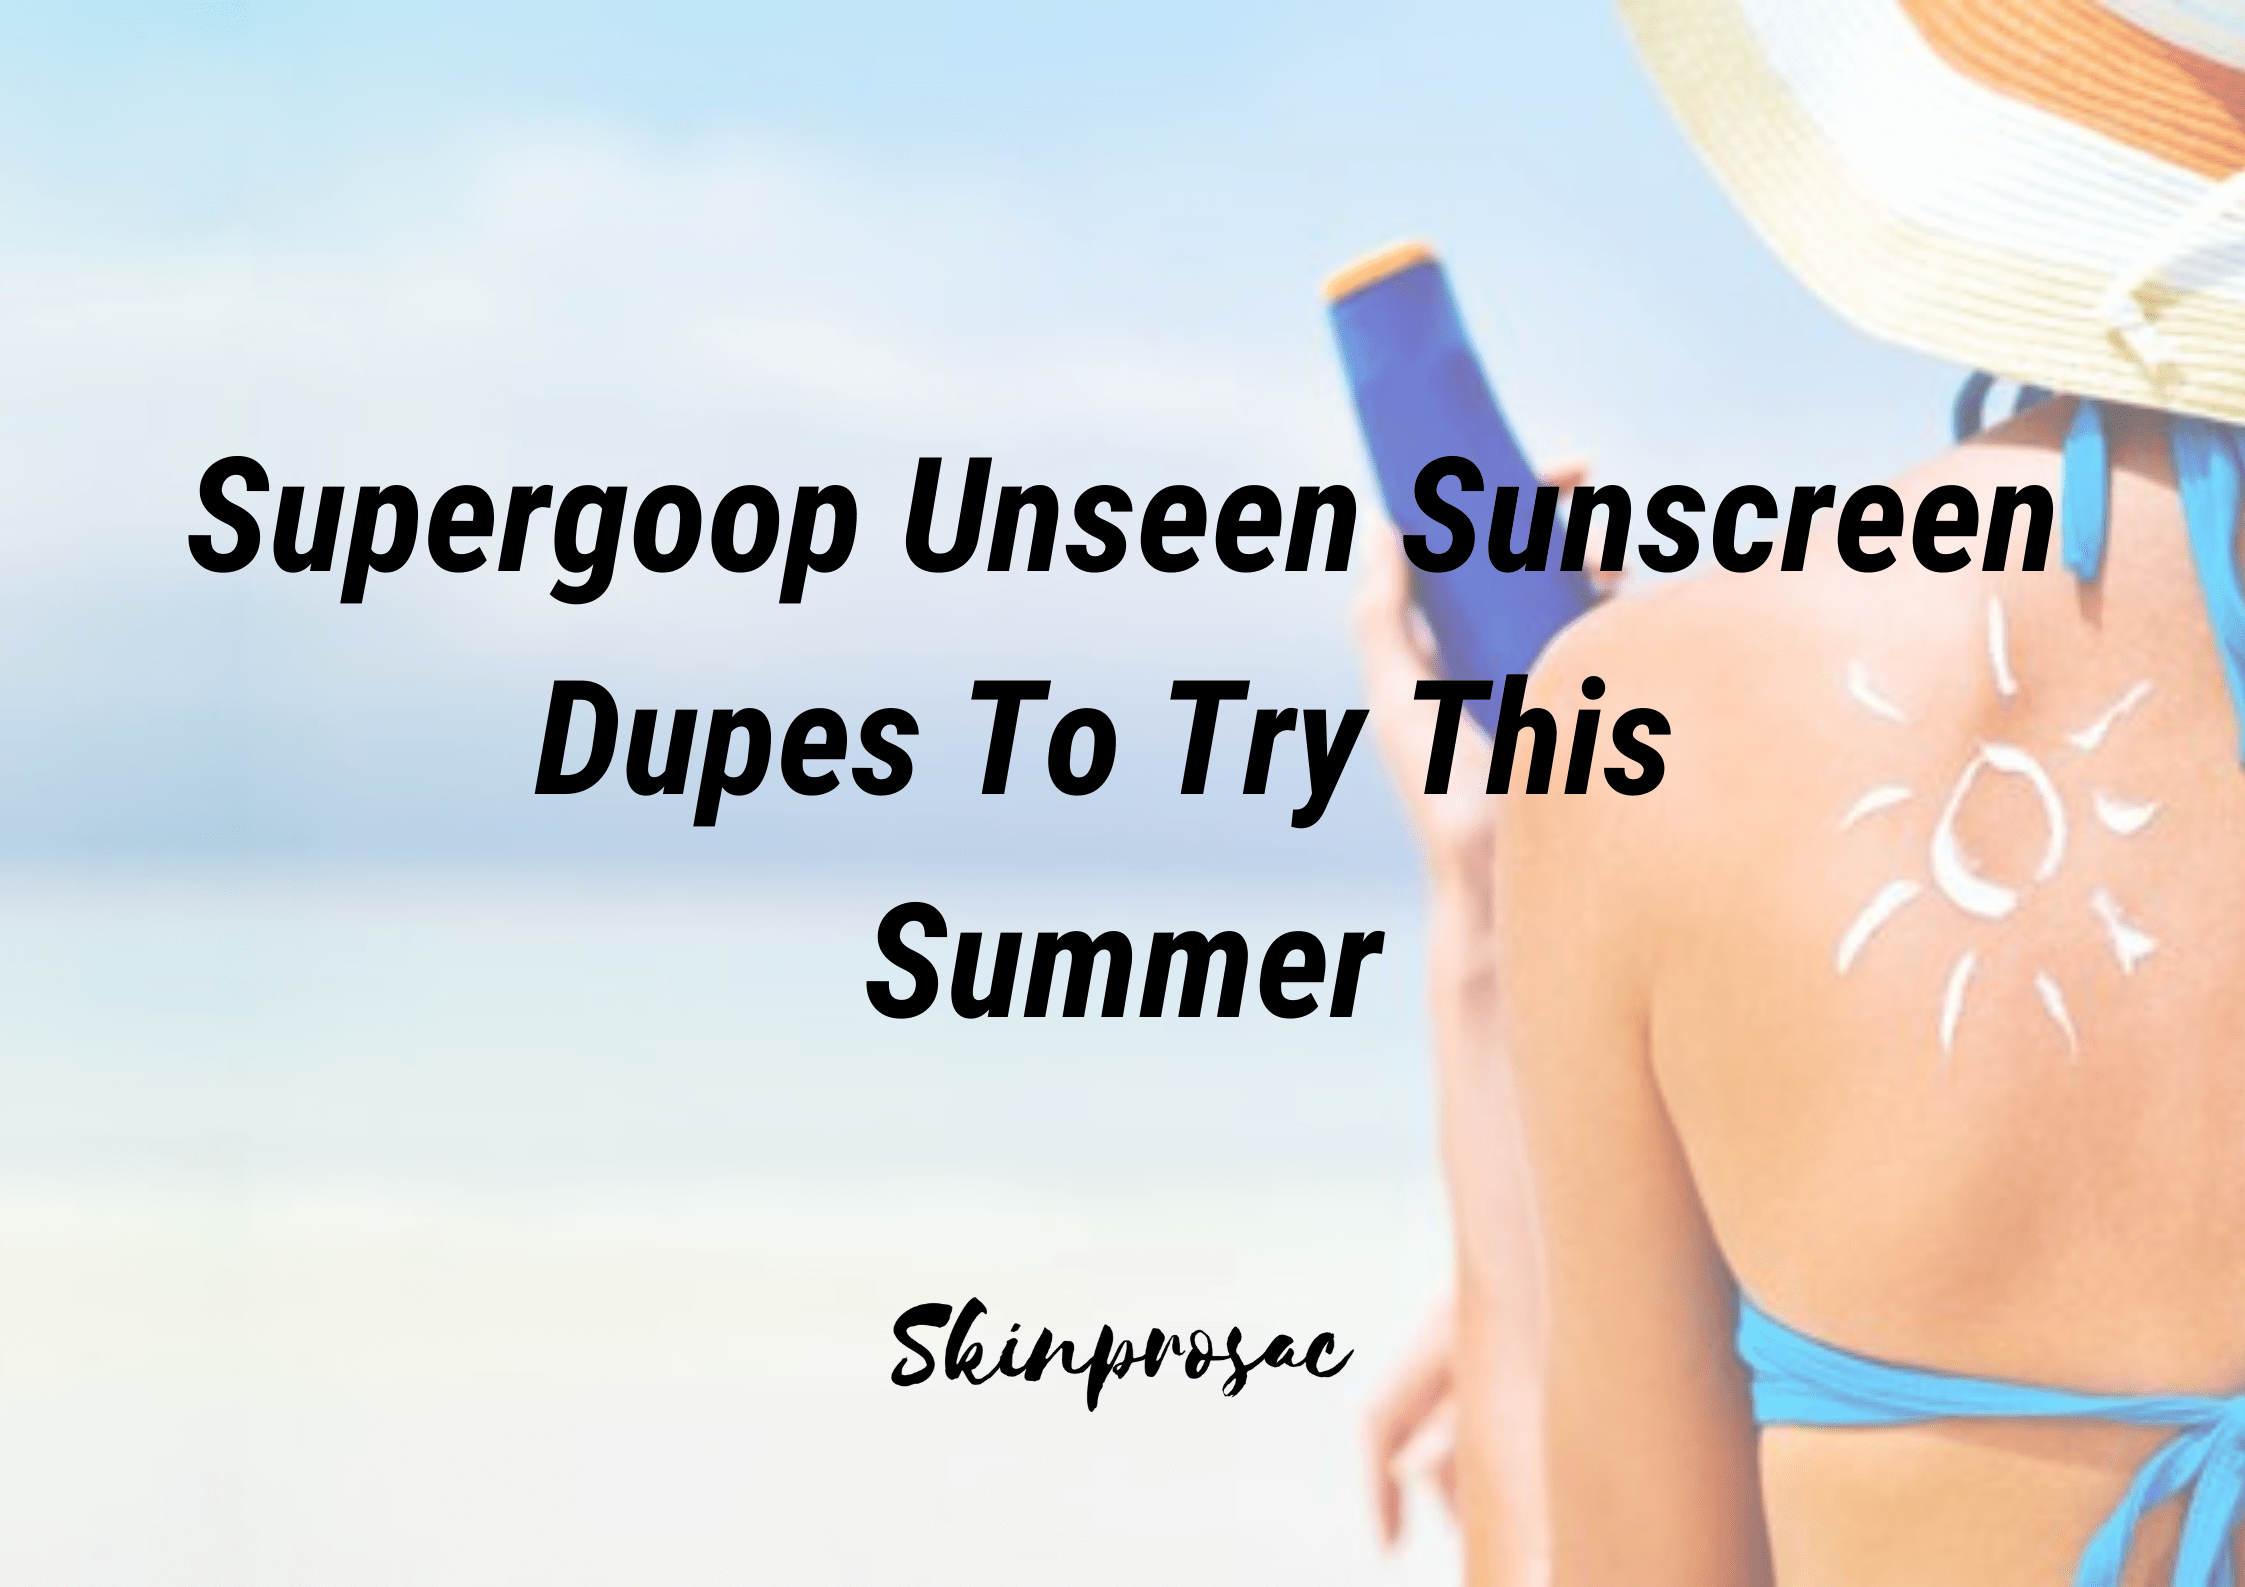 Supergoop Unseen Sunscreen Dupes